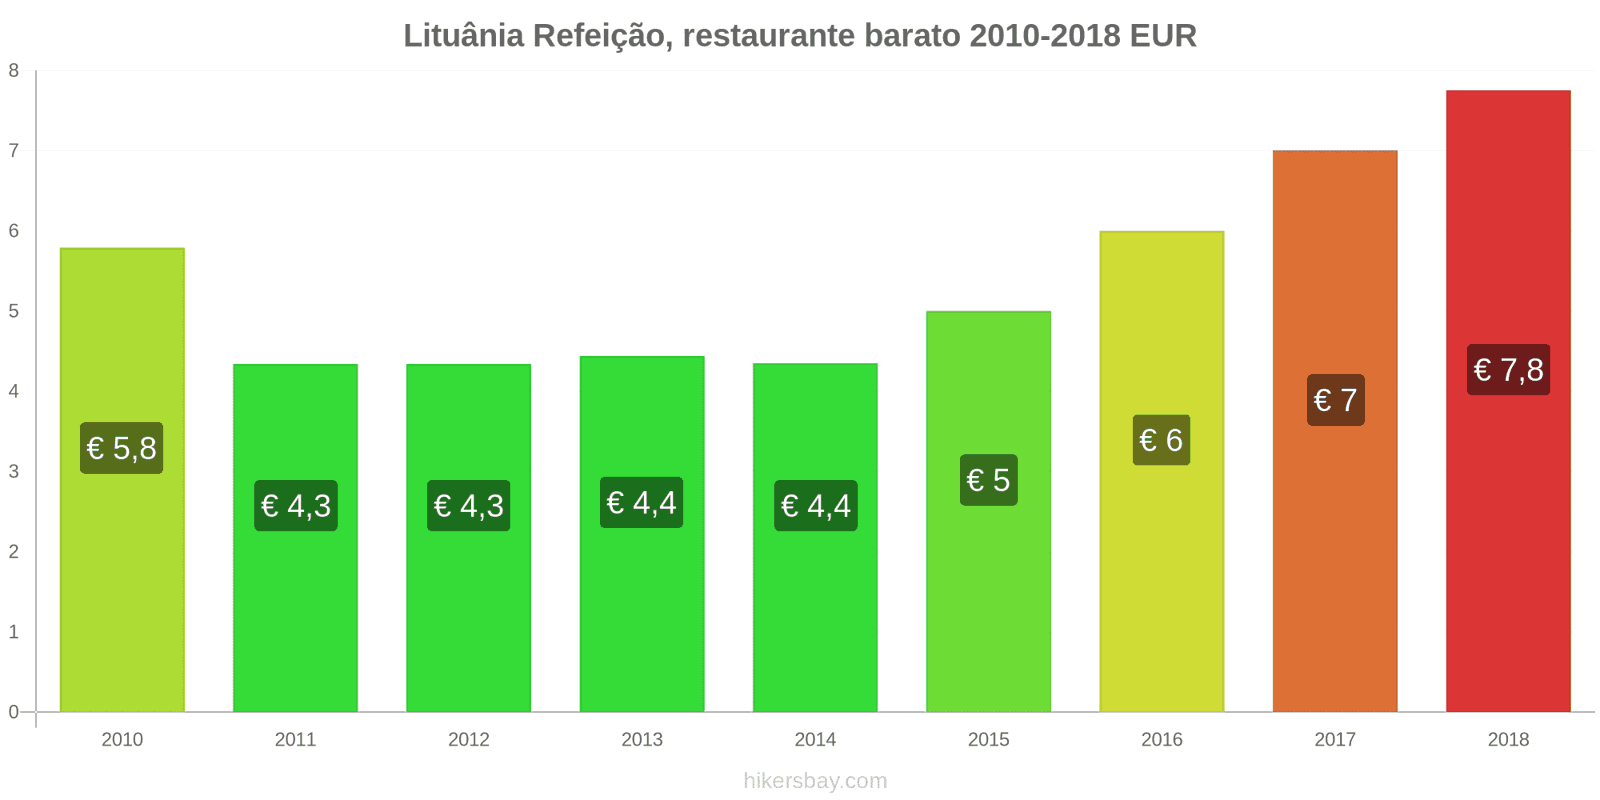 Lituânia mudanças de preços Refeição em um restaurante econômico hikersbay.com